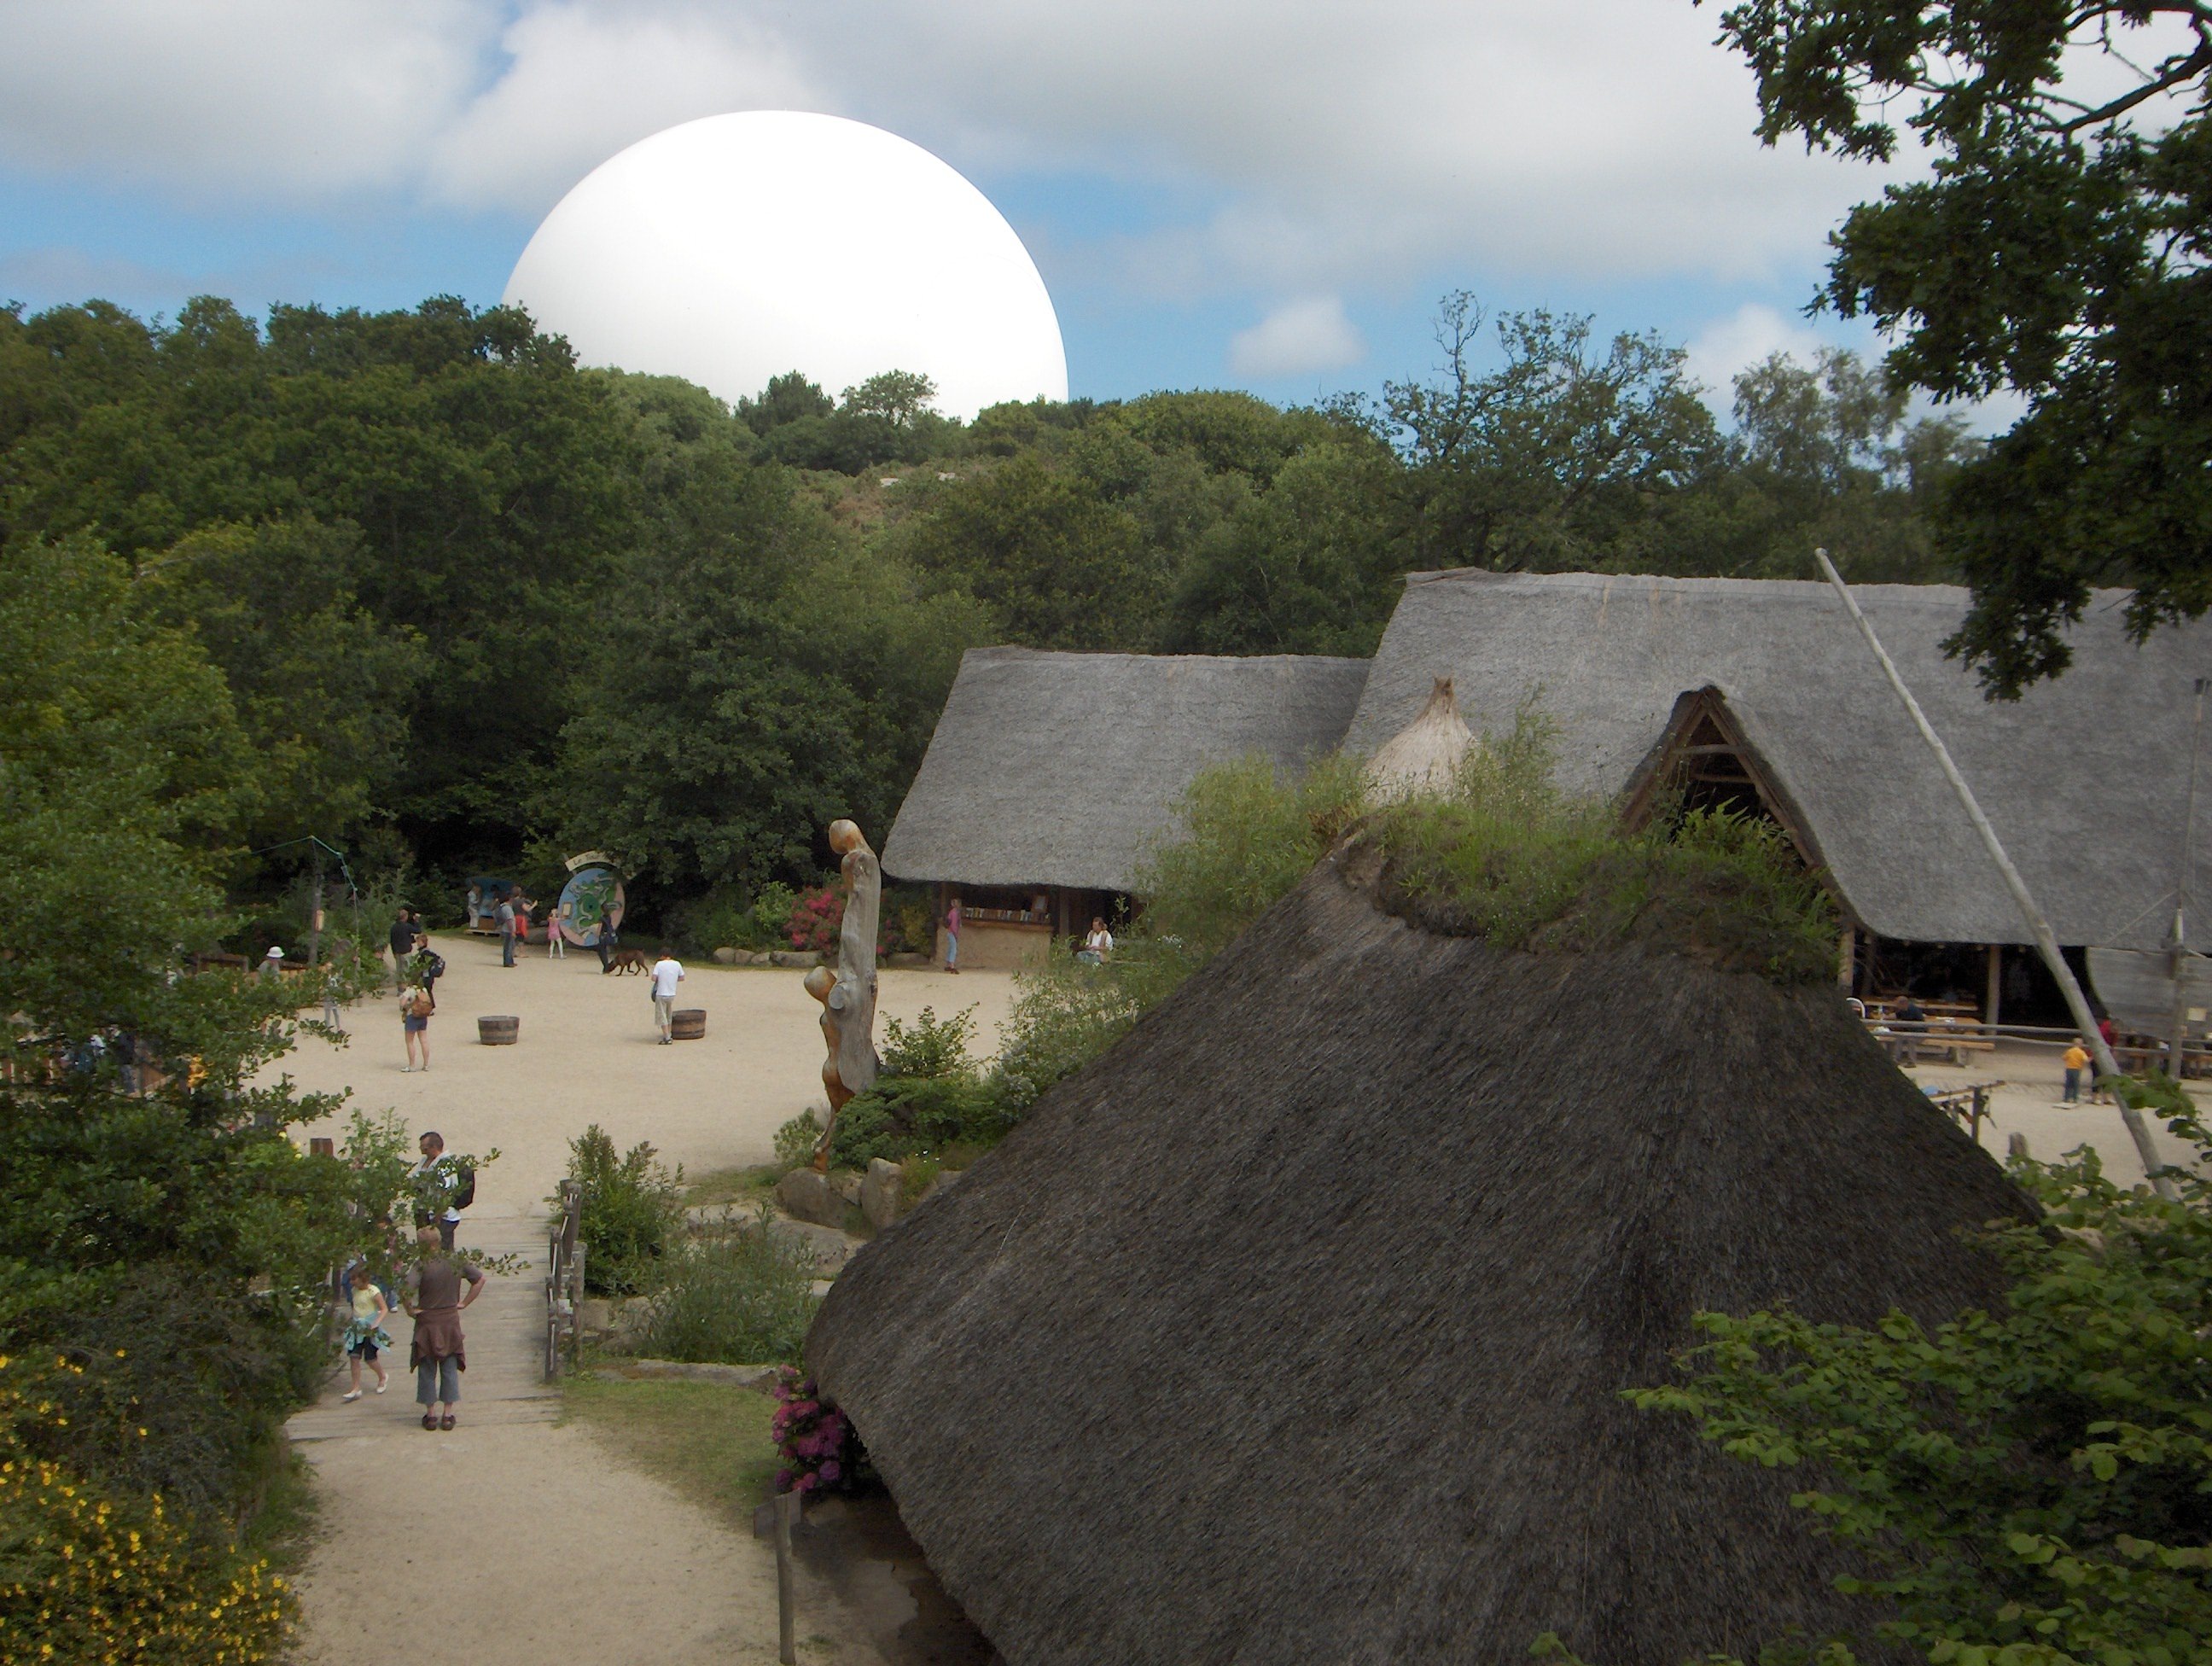 Des bâtiments en bois avec un toit en chaume au milieu d'une clairière. avec une statue en bois représentant une silhouette. Derrière les arbres, la sphère blanche du Radôme dépasse de façon incongrue.